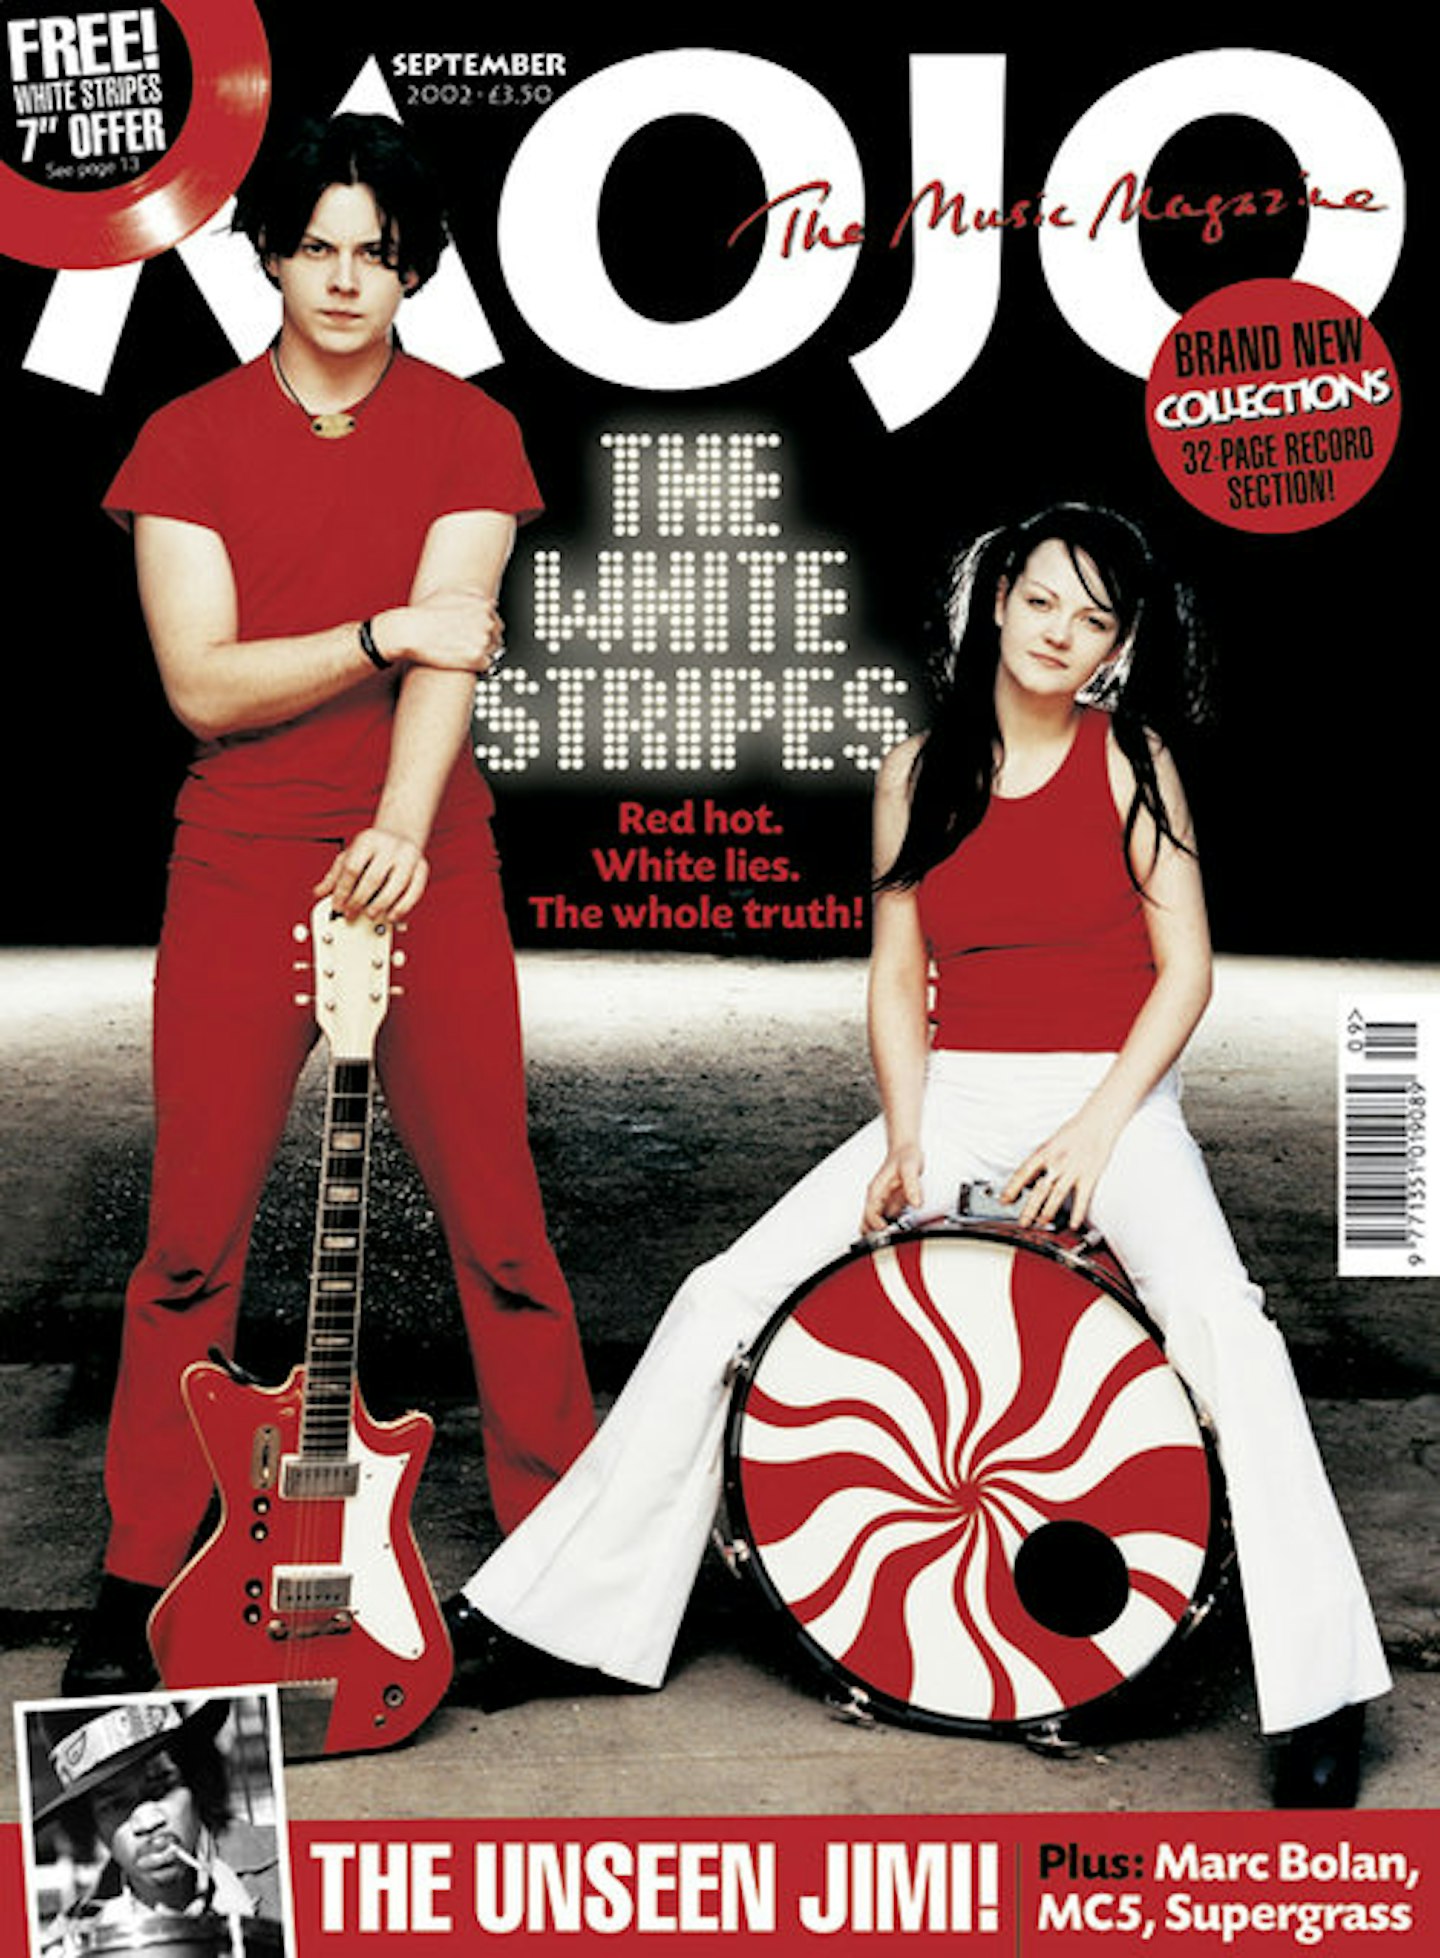 MOJO Issue 106 / September 2002